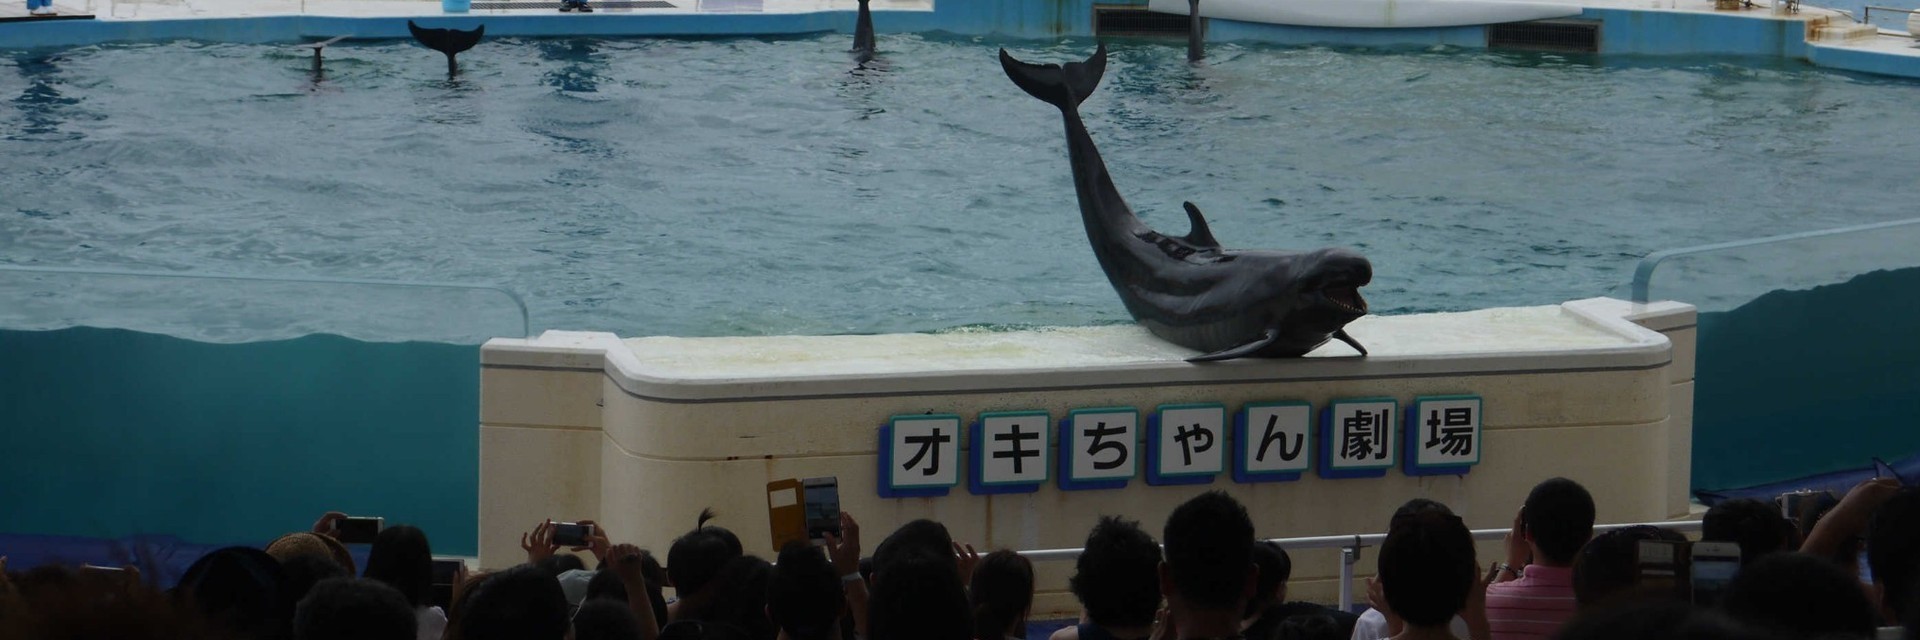 海洋博公园海豚表演剧场Okichan Dolphin Theater